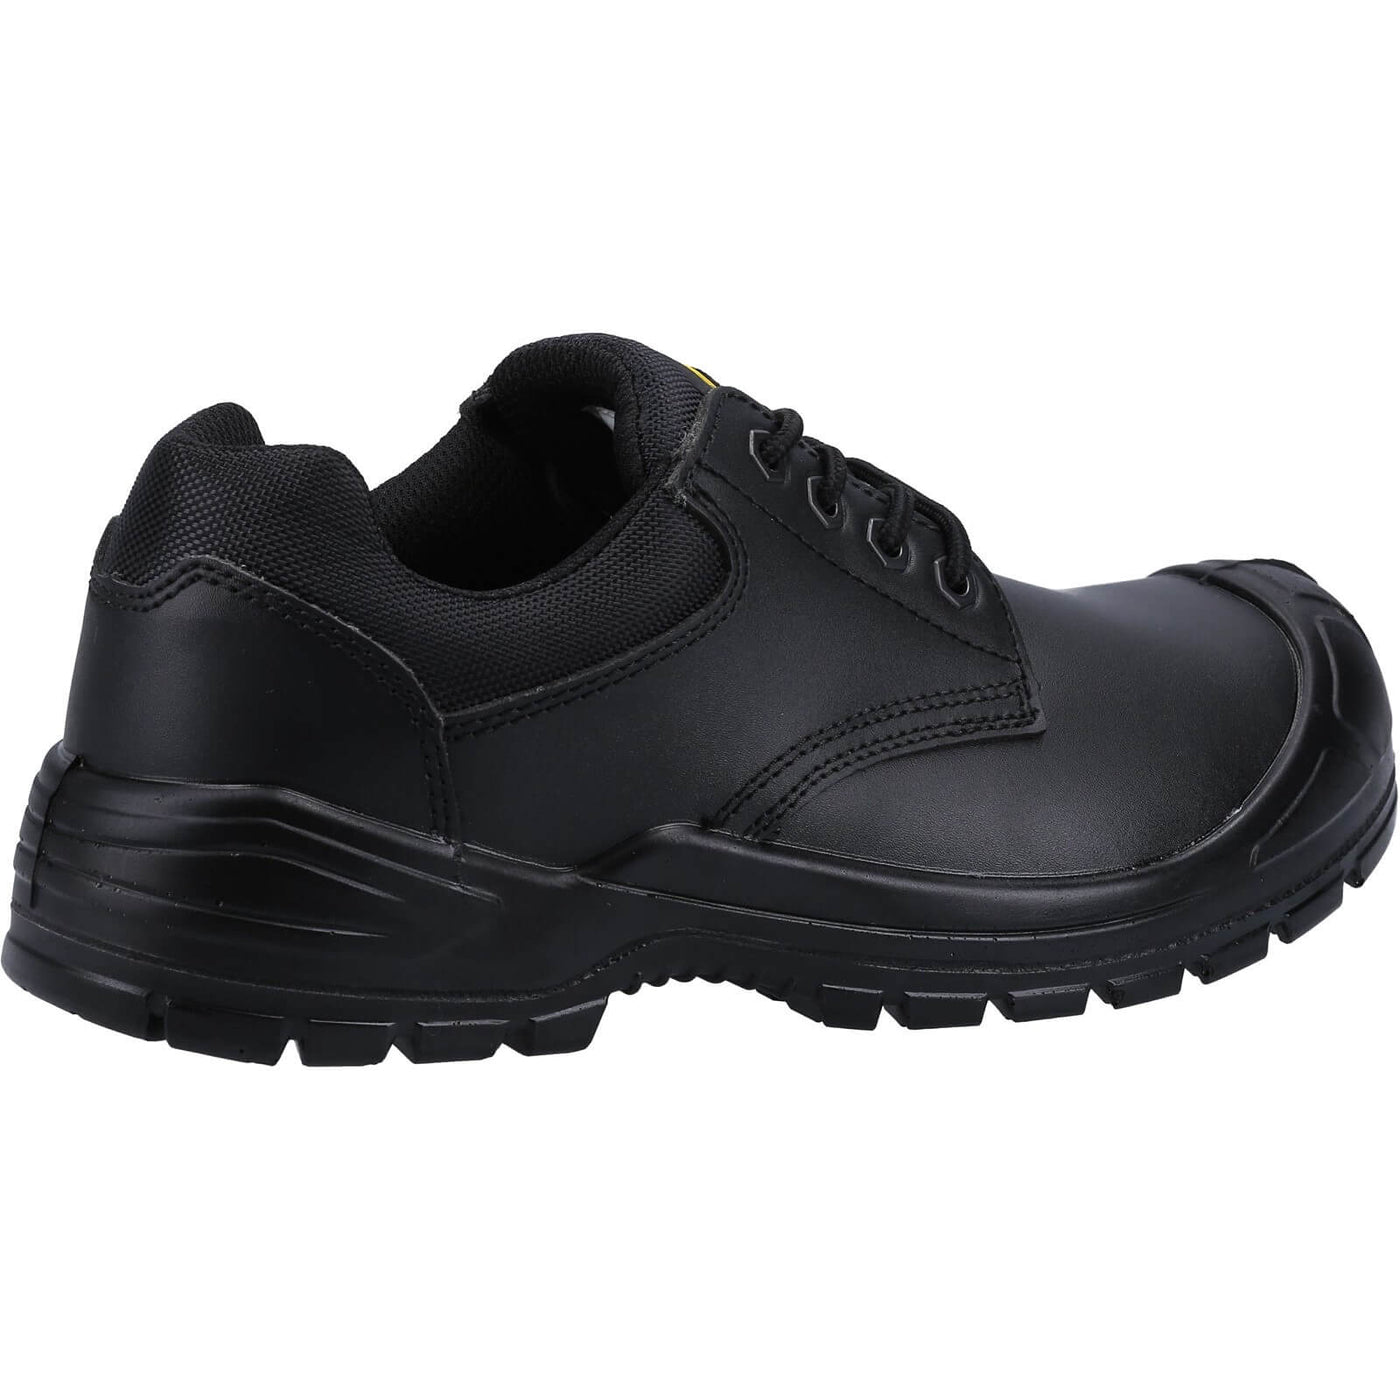 Amblers 66 Safety Shoes Black 2#colour_black